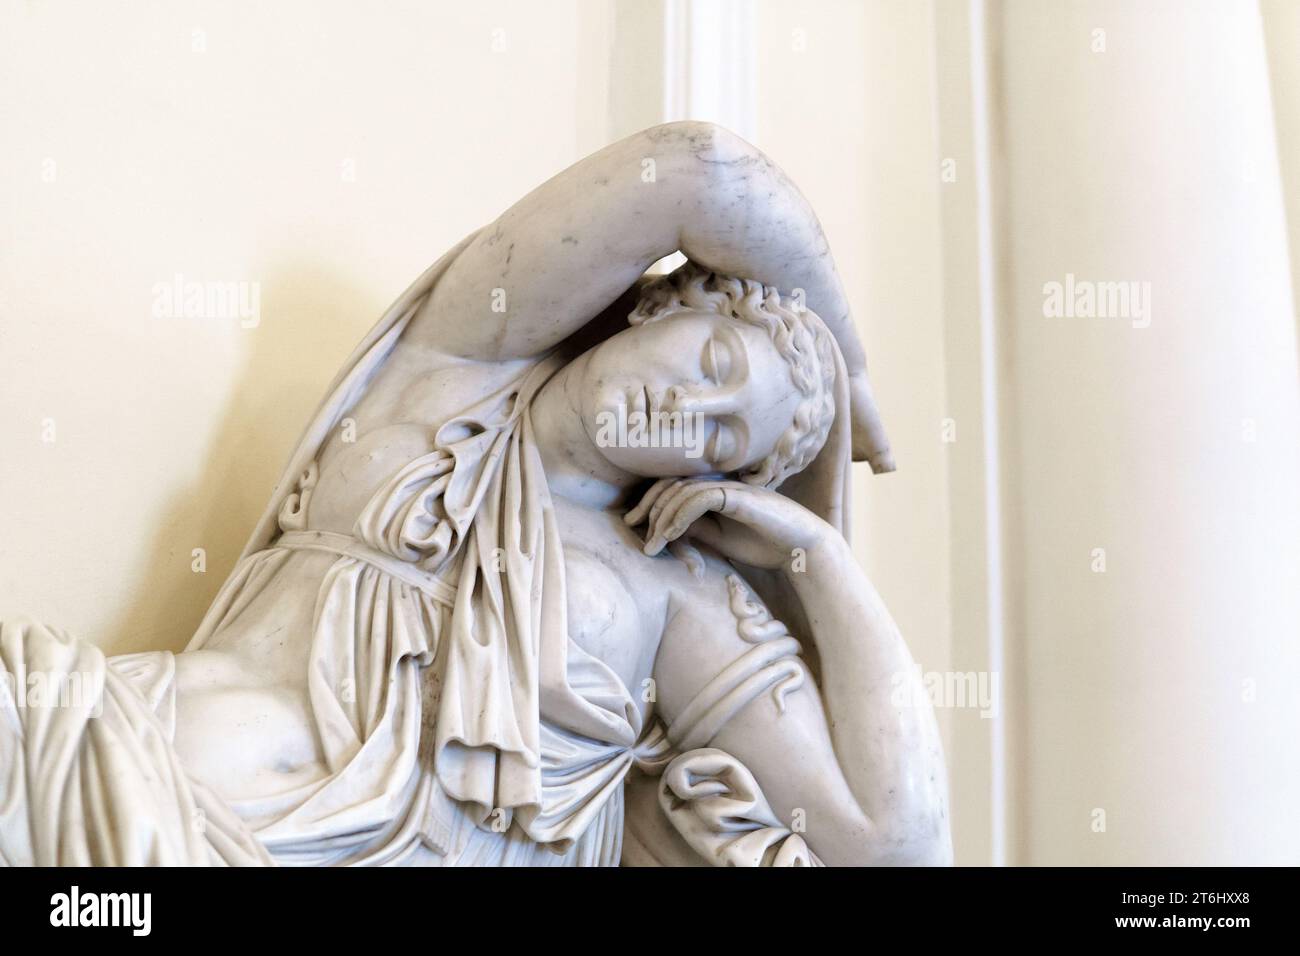 Saint-Pétersbourg, Russie - 03 août 2023 : sculpture antique d'Ariane endormie à l'intérieur du musée de l'Ermitage Banque D'Images